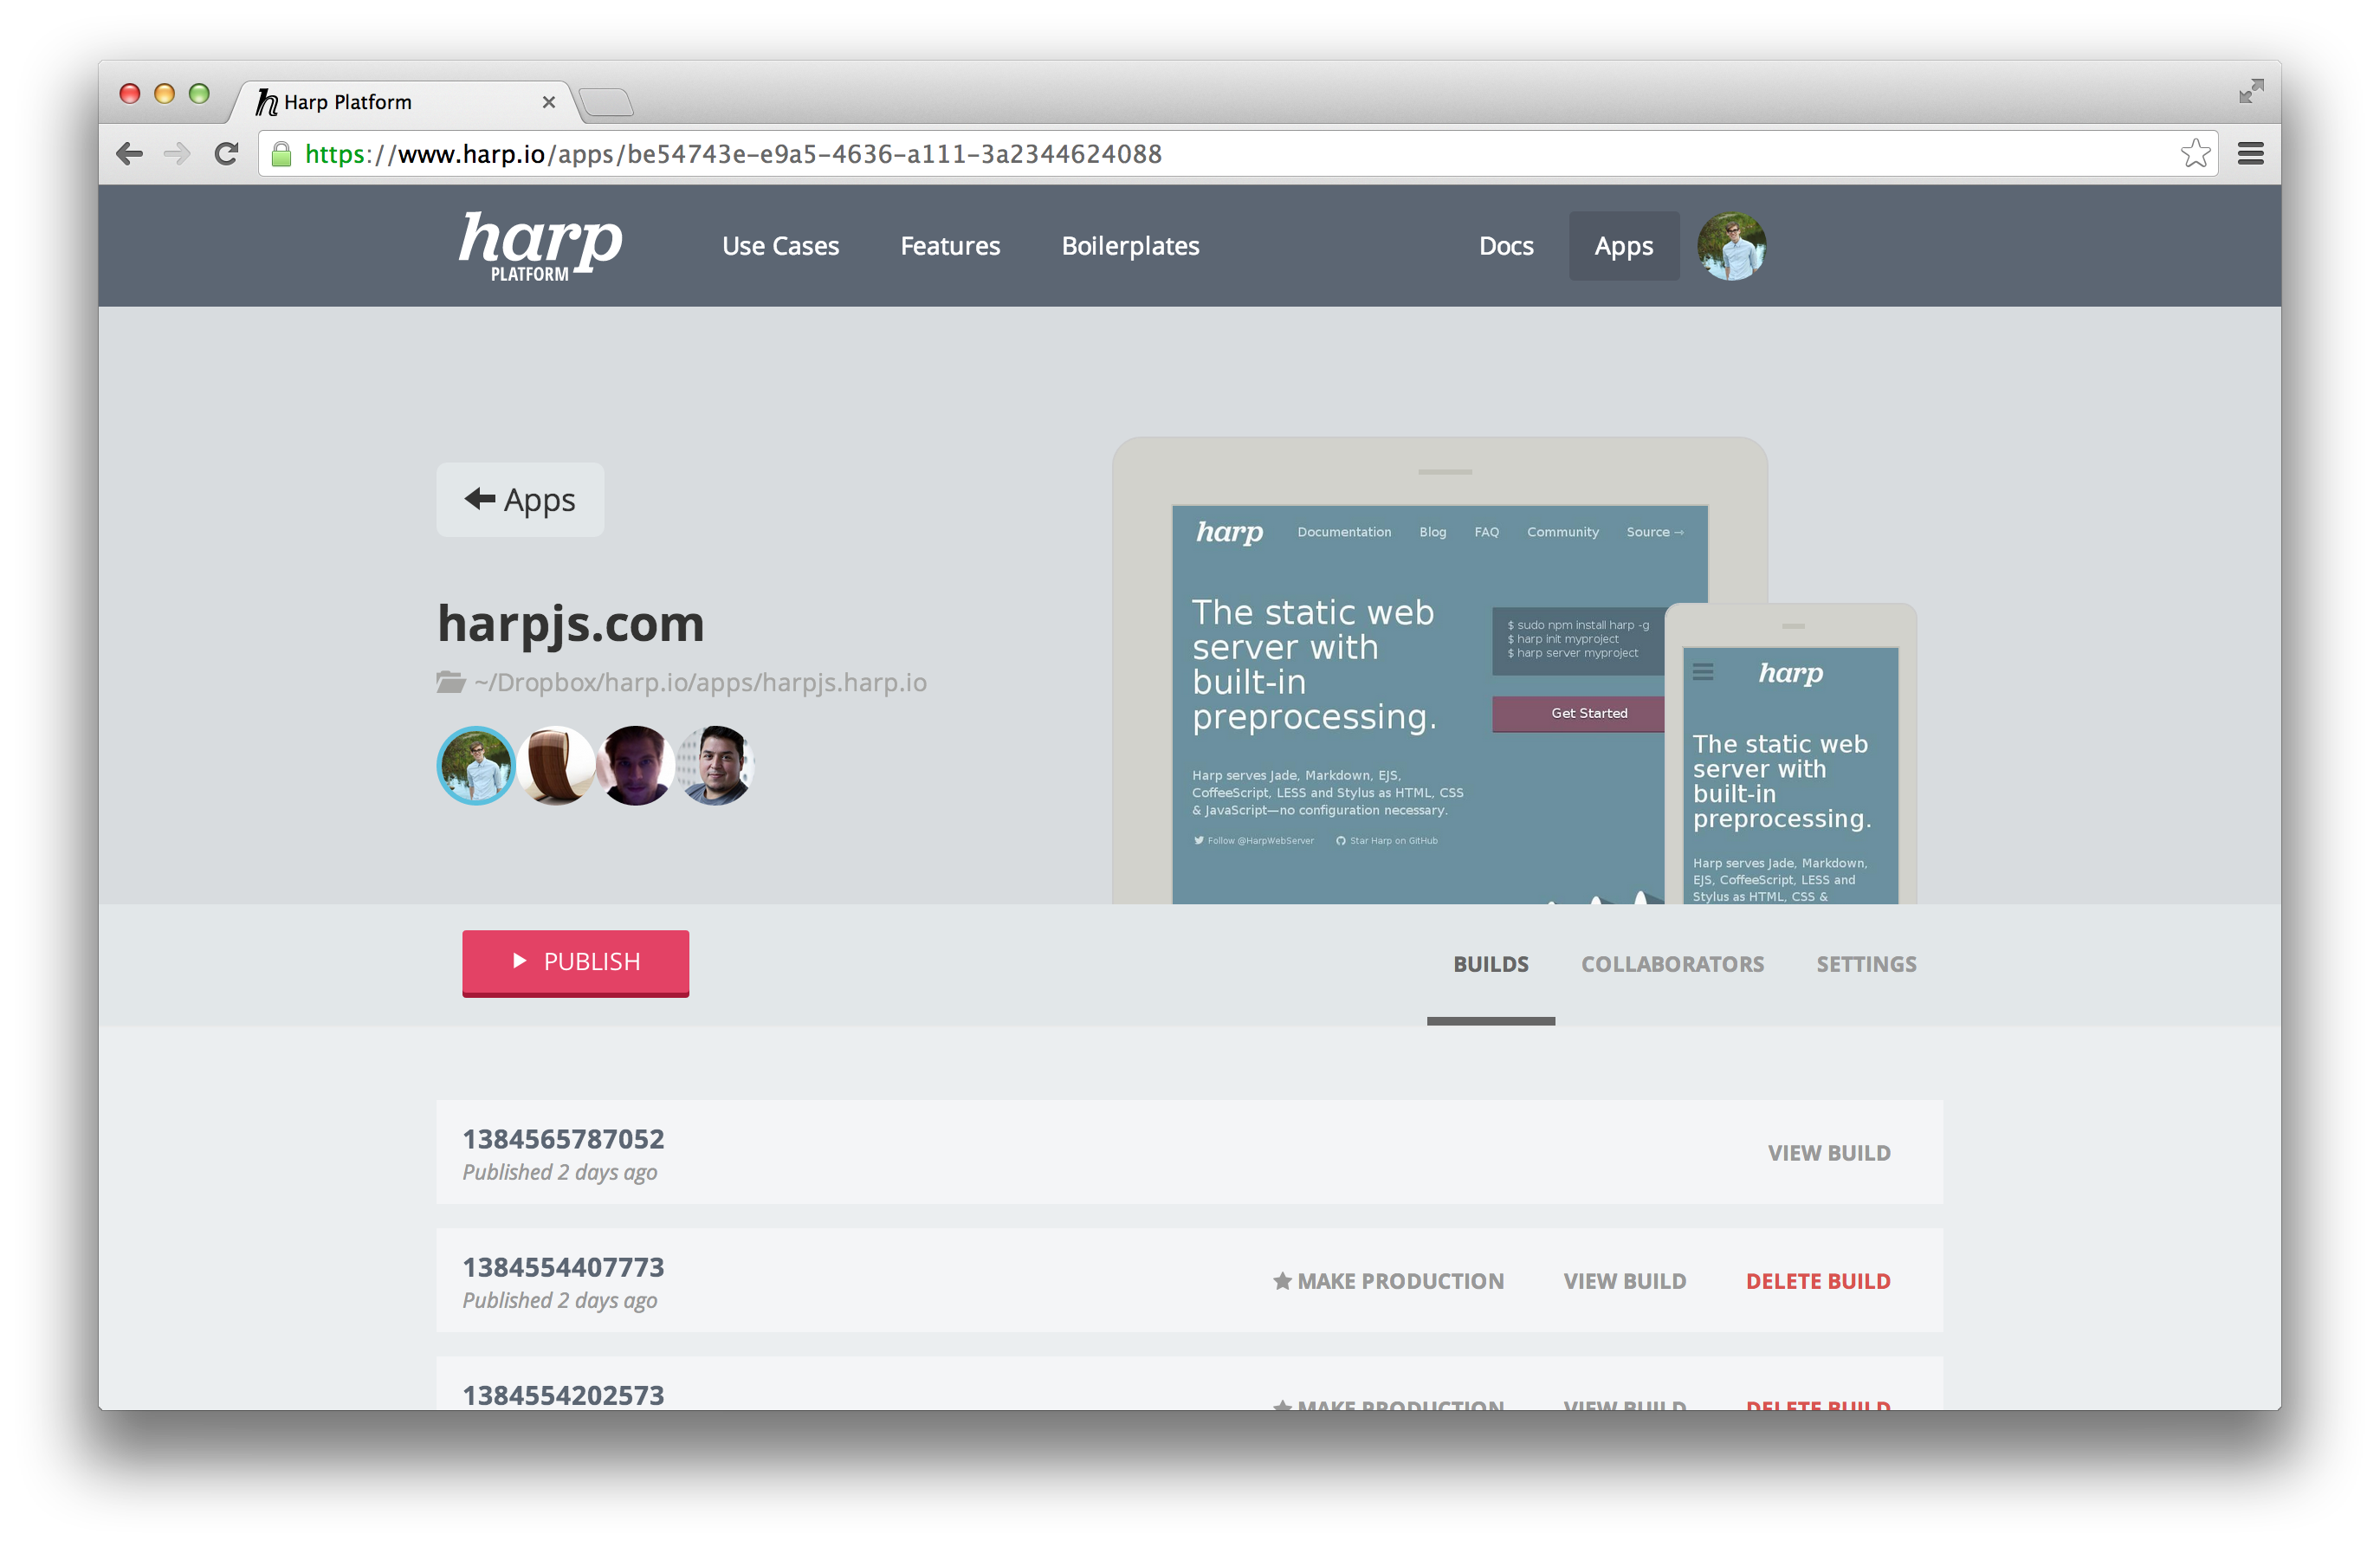 Harp Platform wordmark